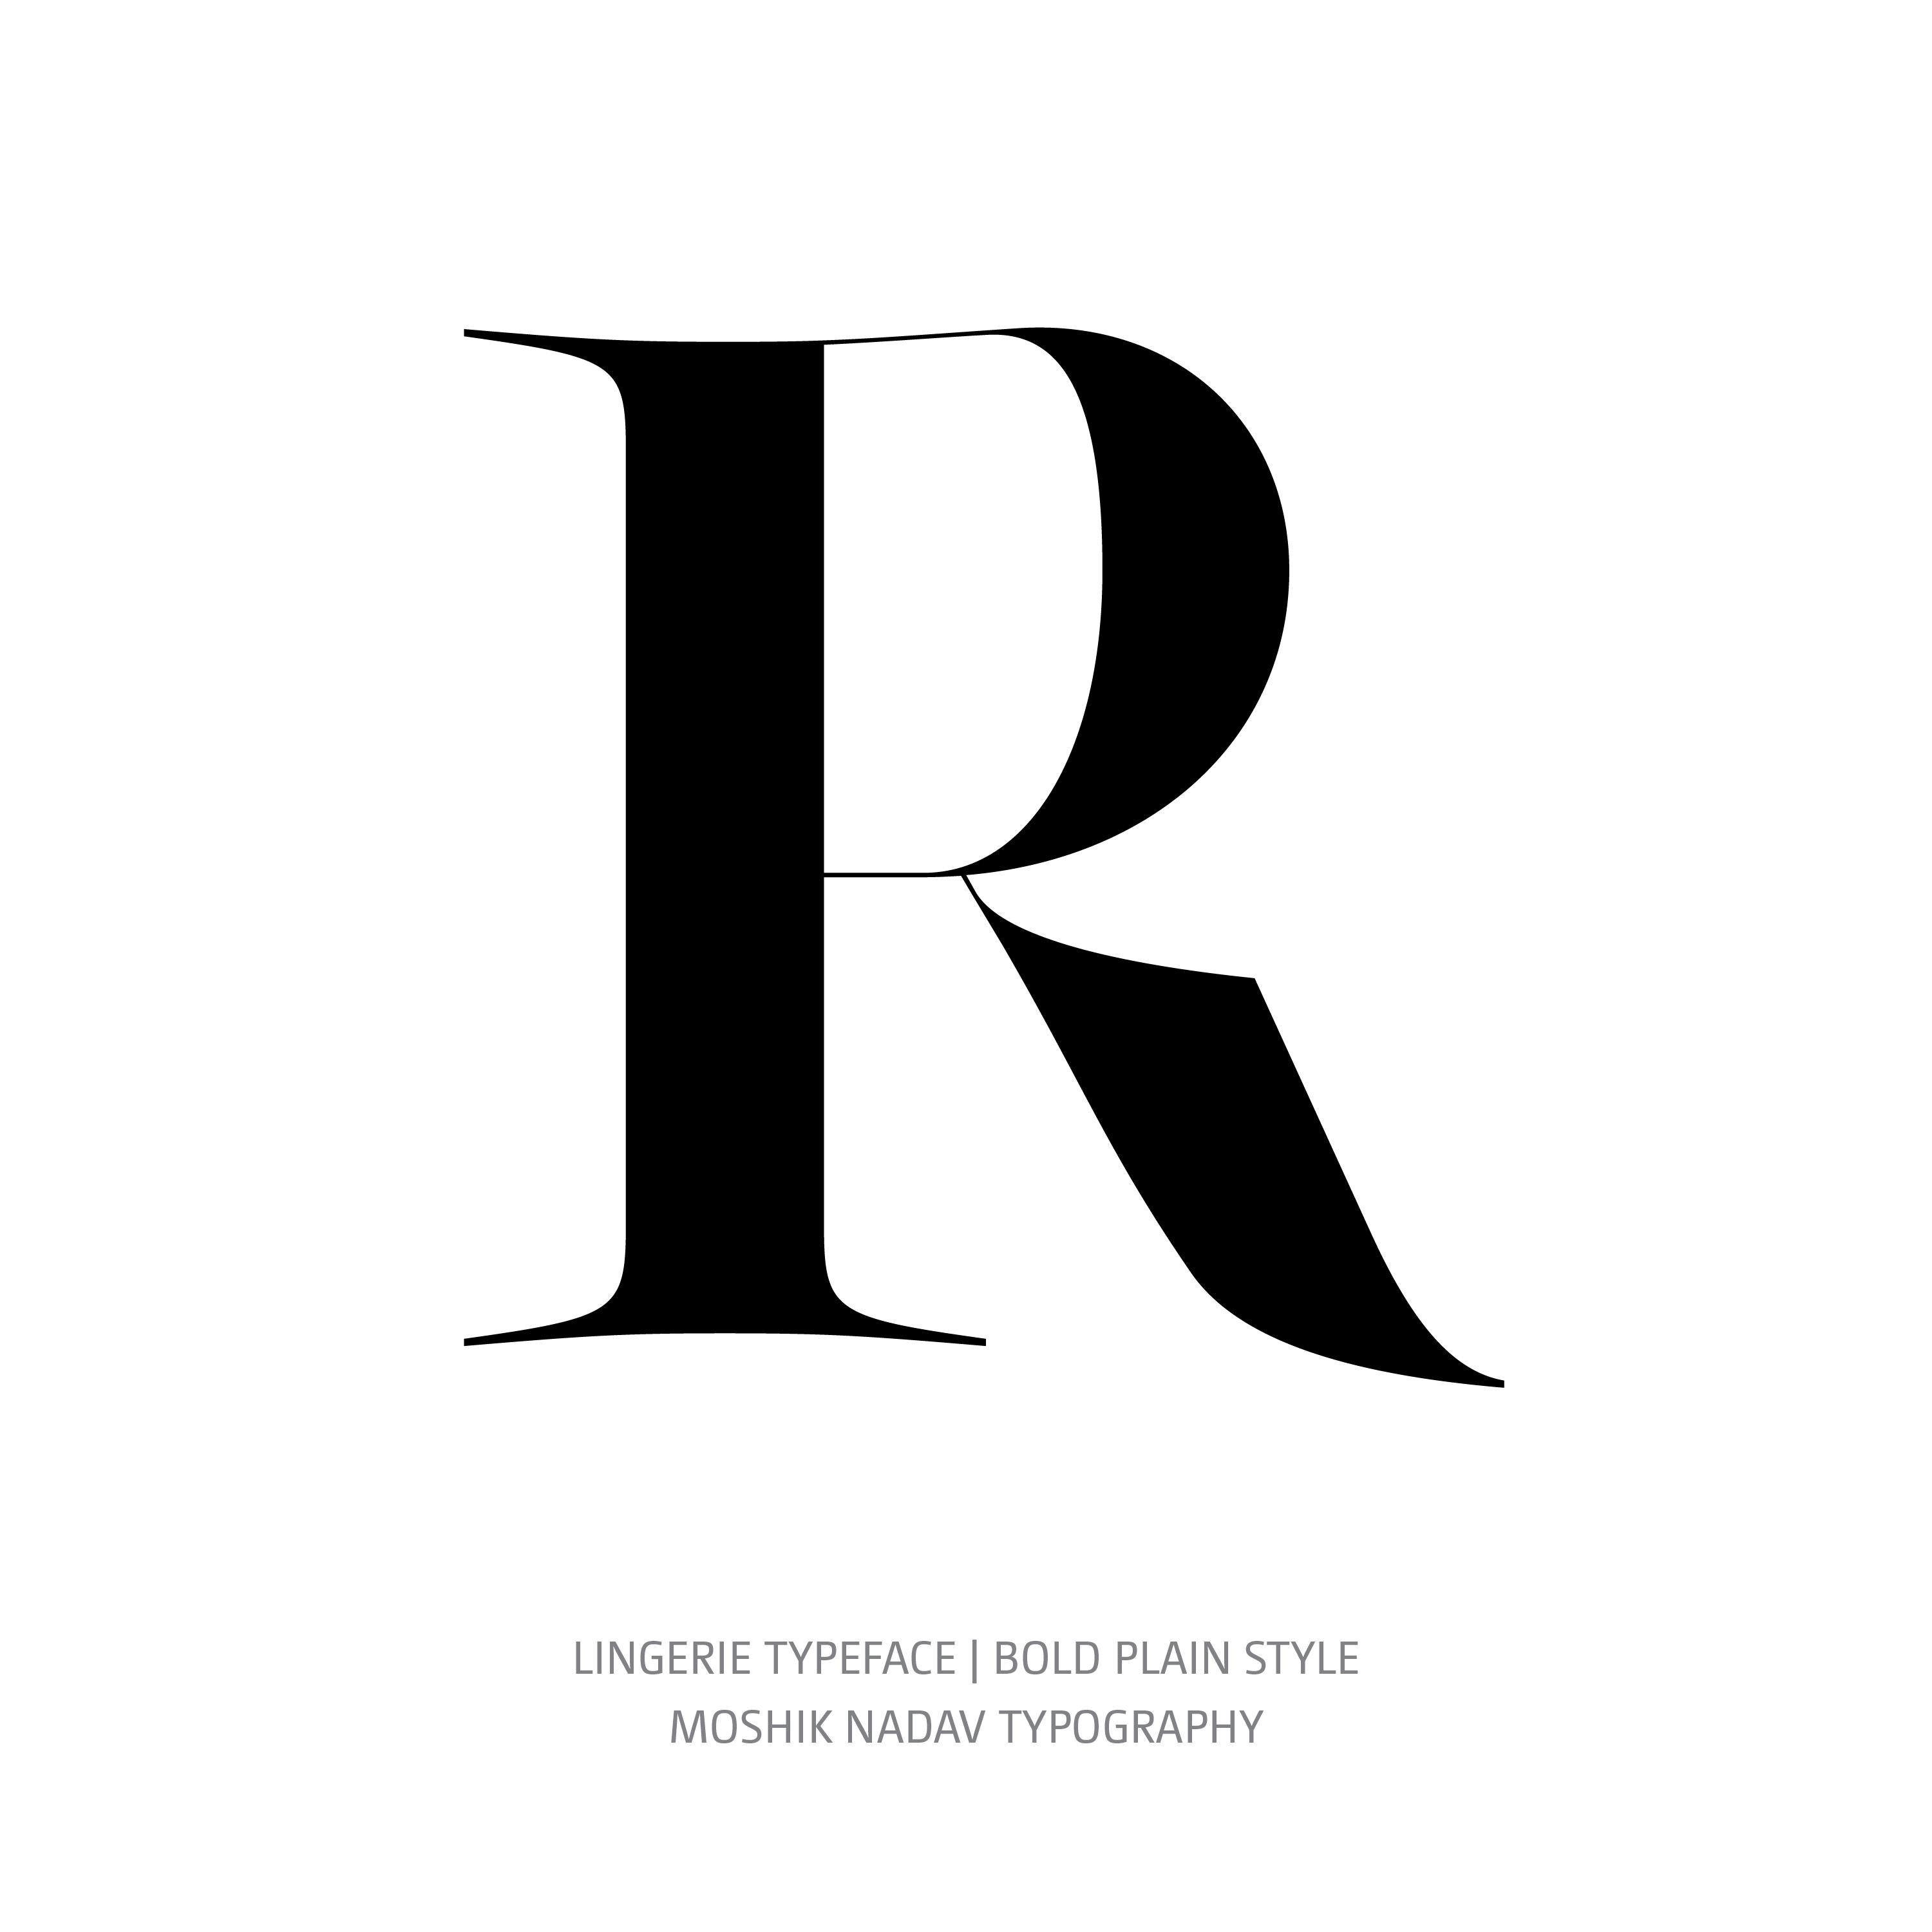 Lingerie Typeface Bold Plain R